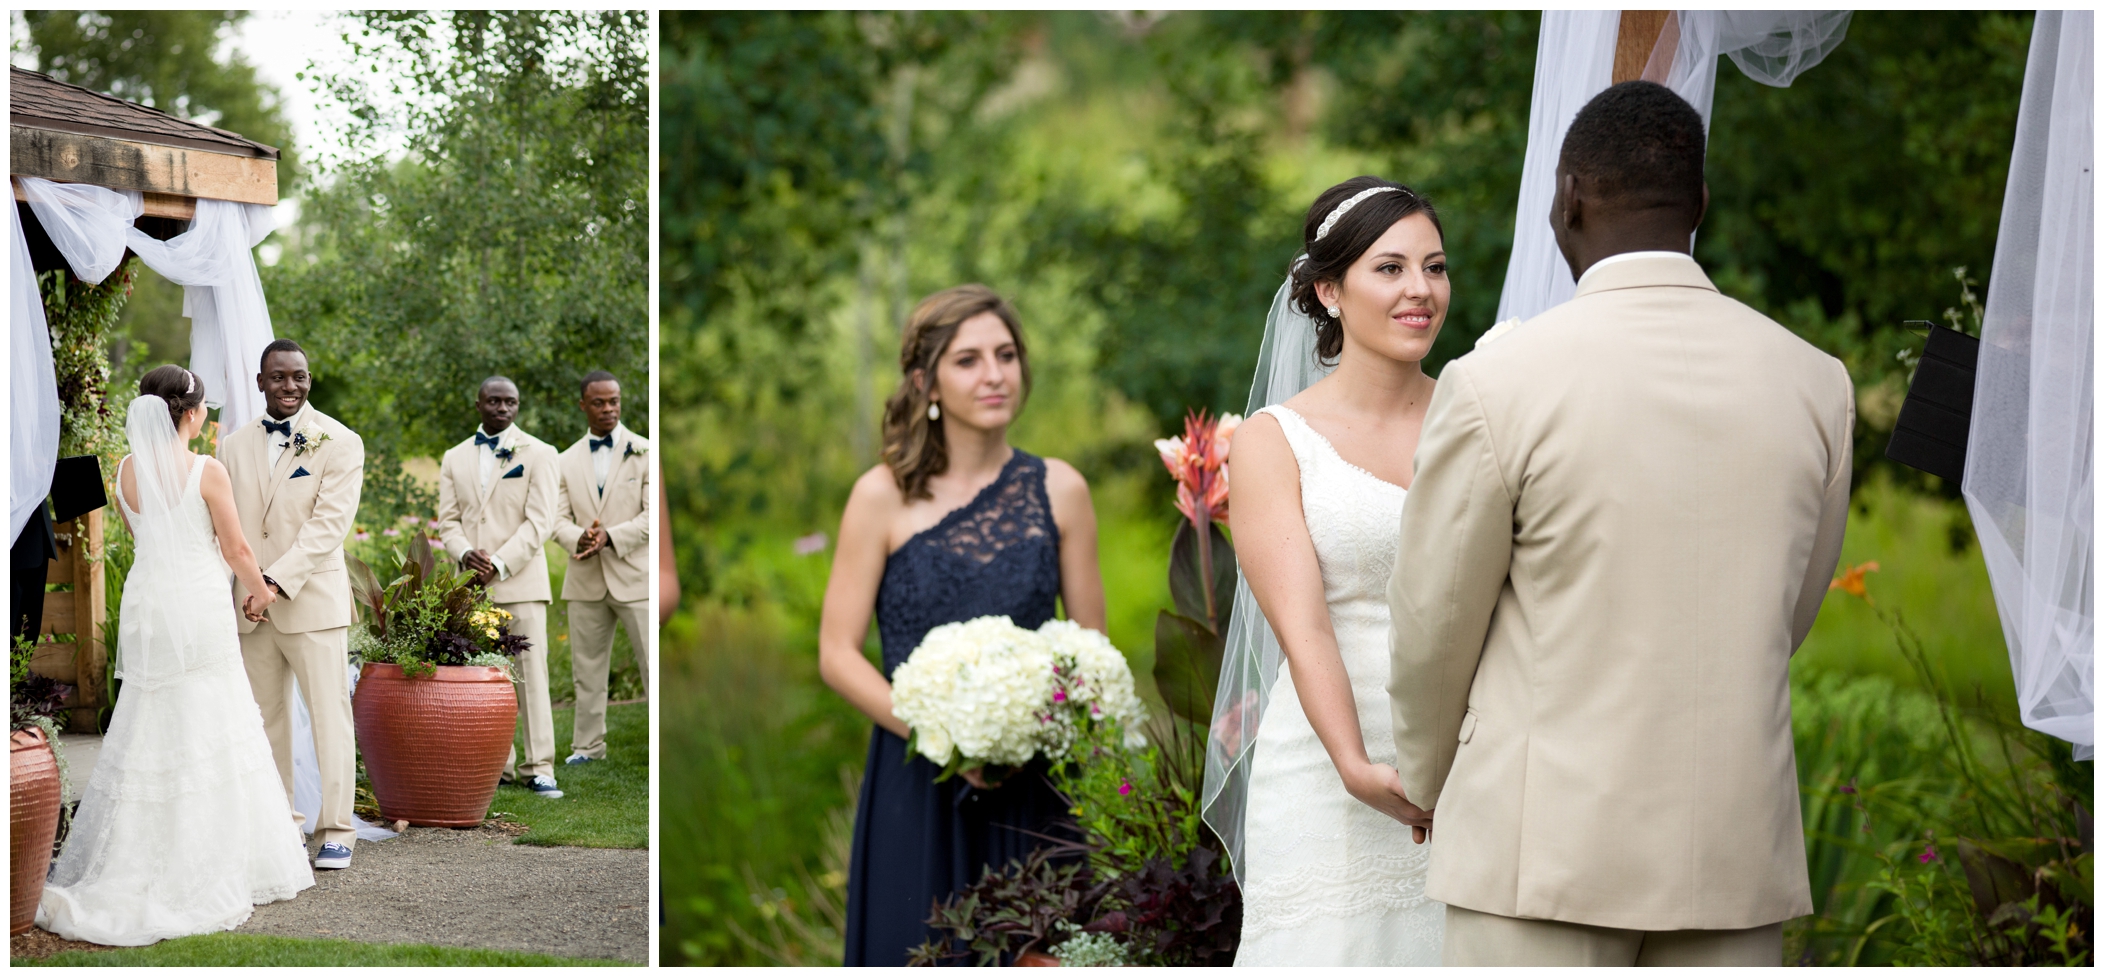 Chatfield Botanic Gardens wedding ceremony